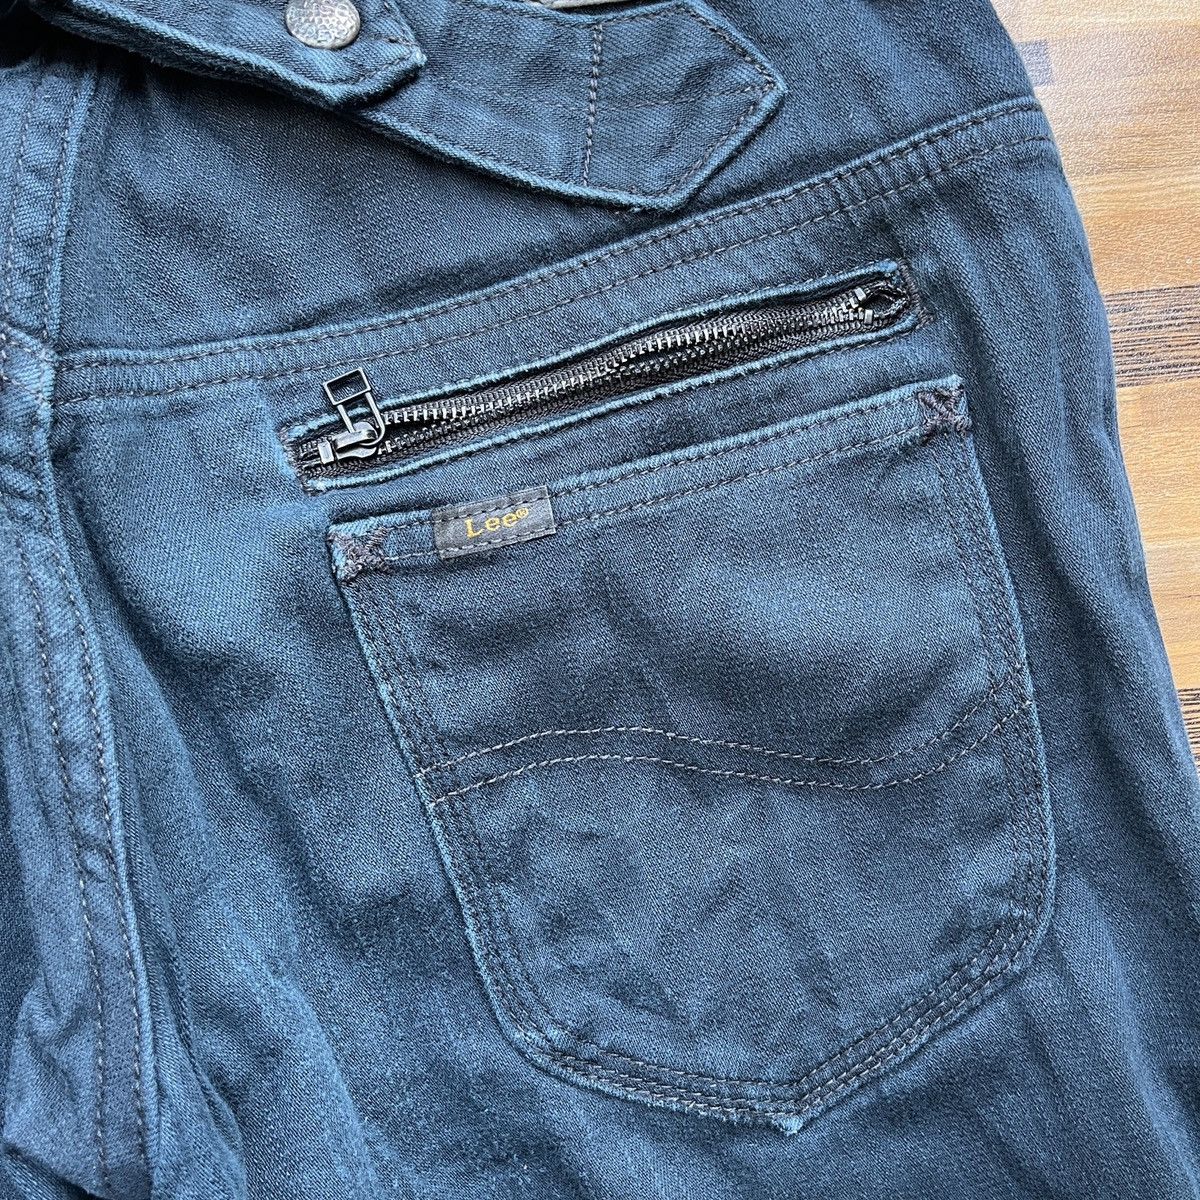 Multipocket Lee Rider Denim Jeans Vintage - 15